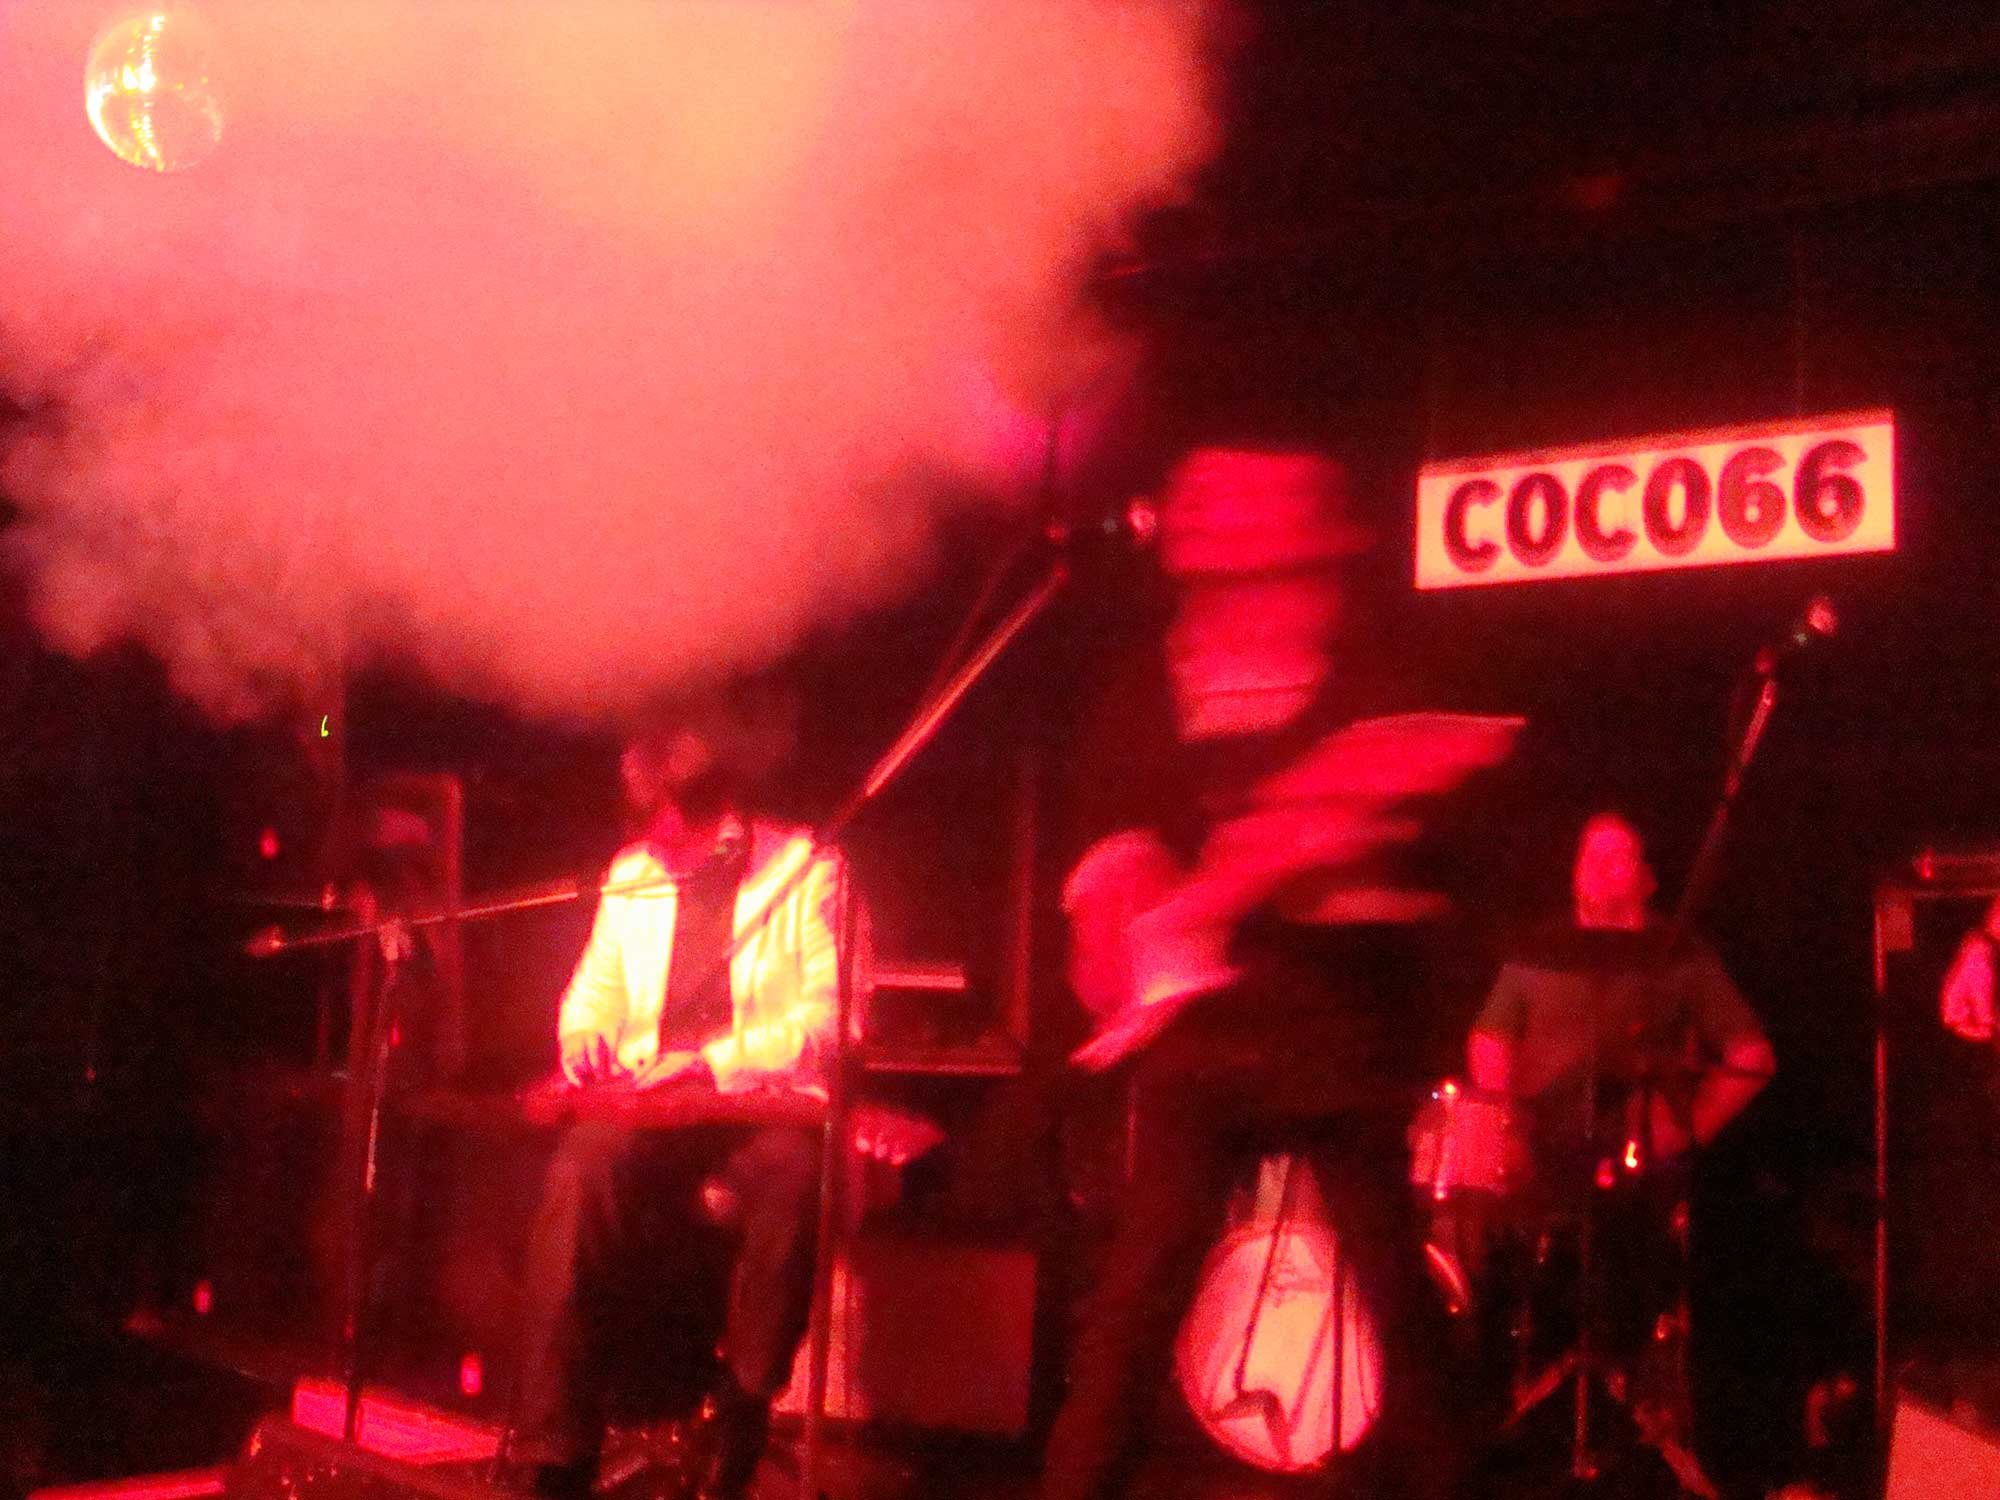  Parlor Grand performing at COCO66, Brooklyn, NY, 2009 